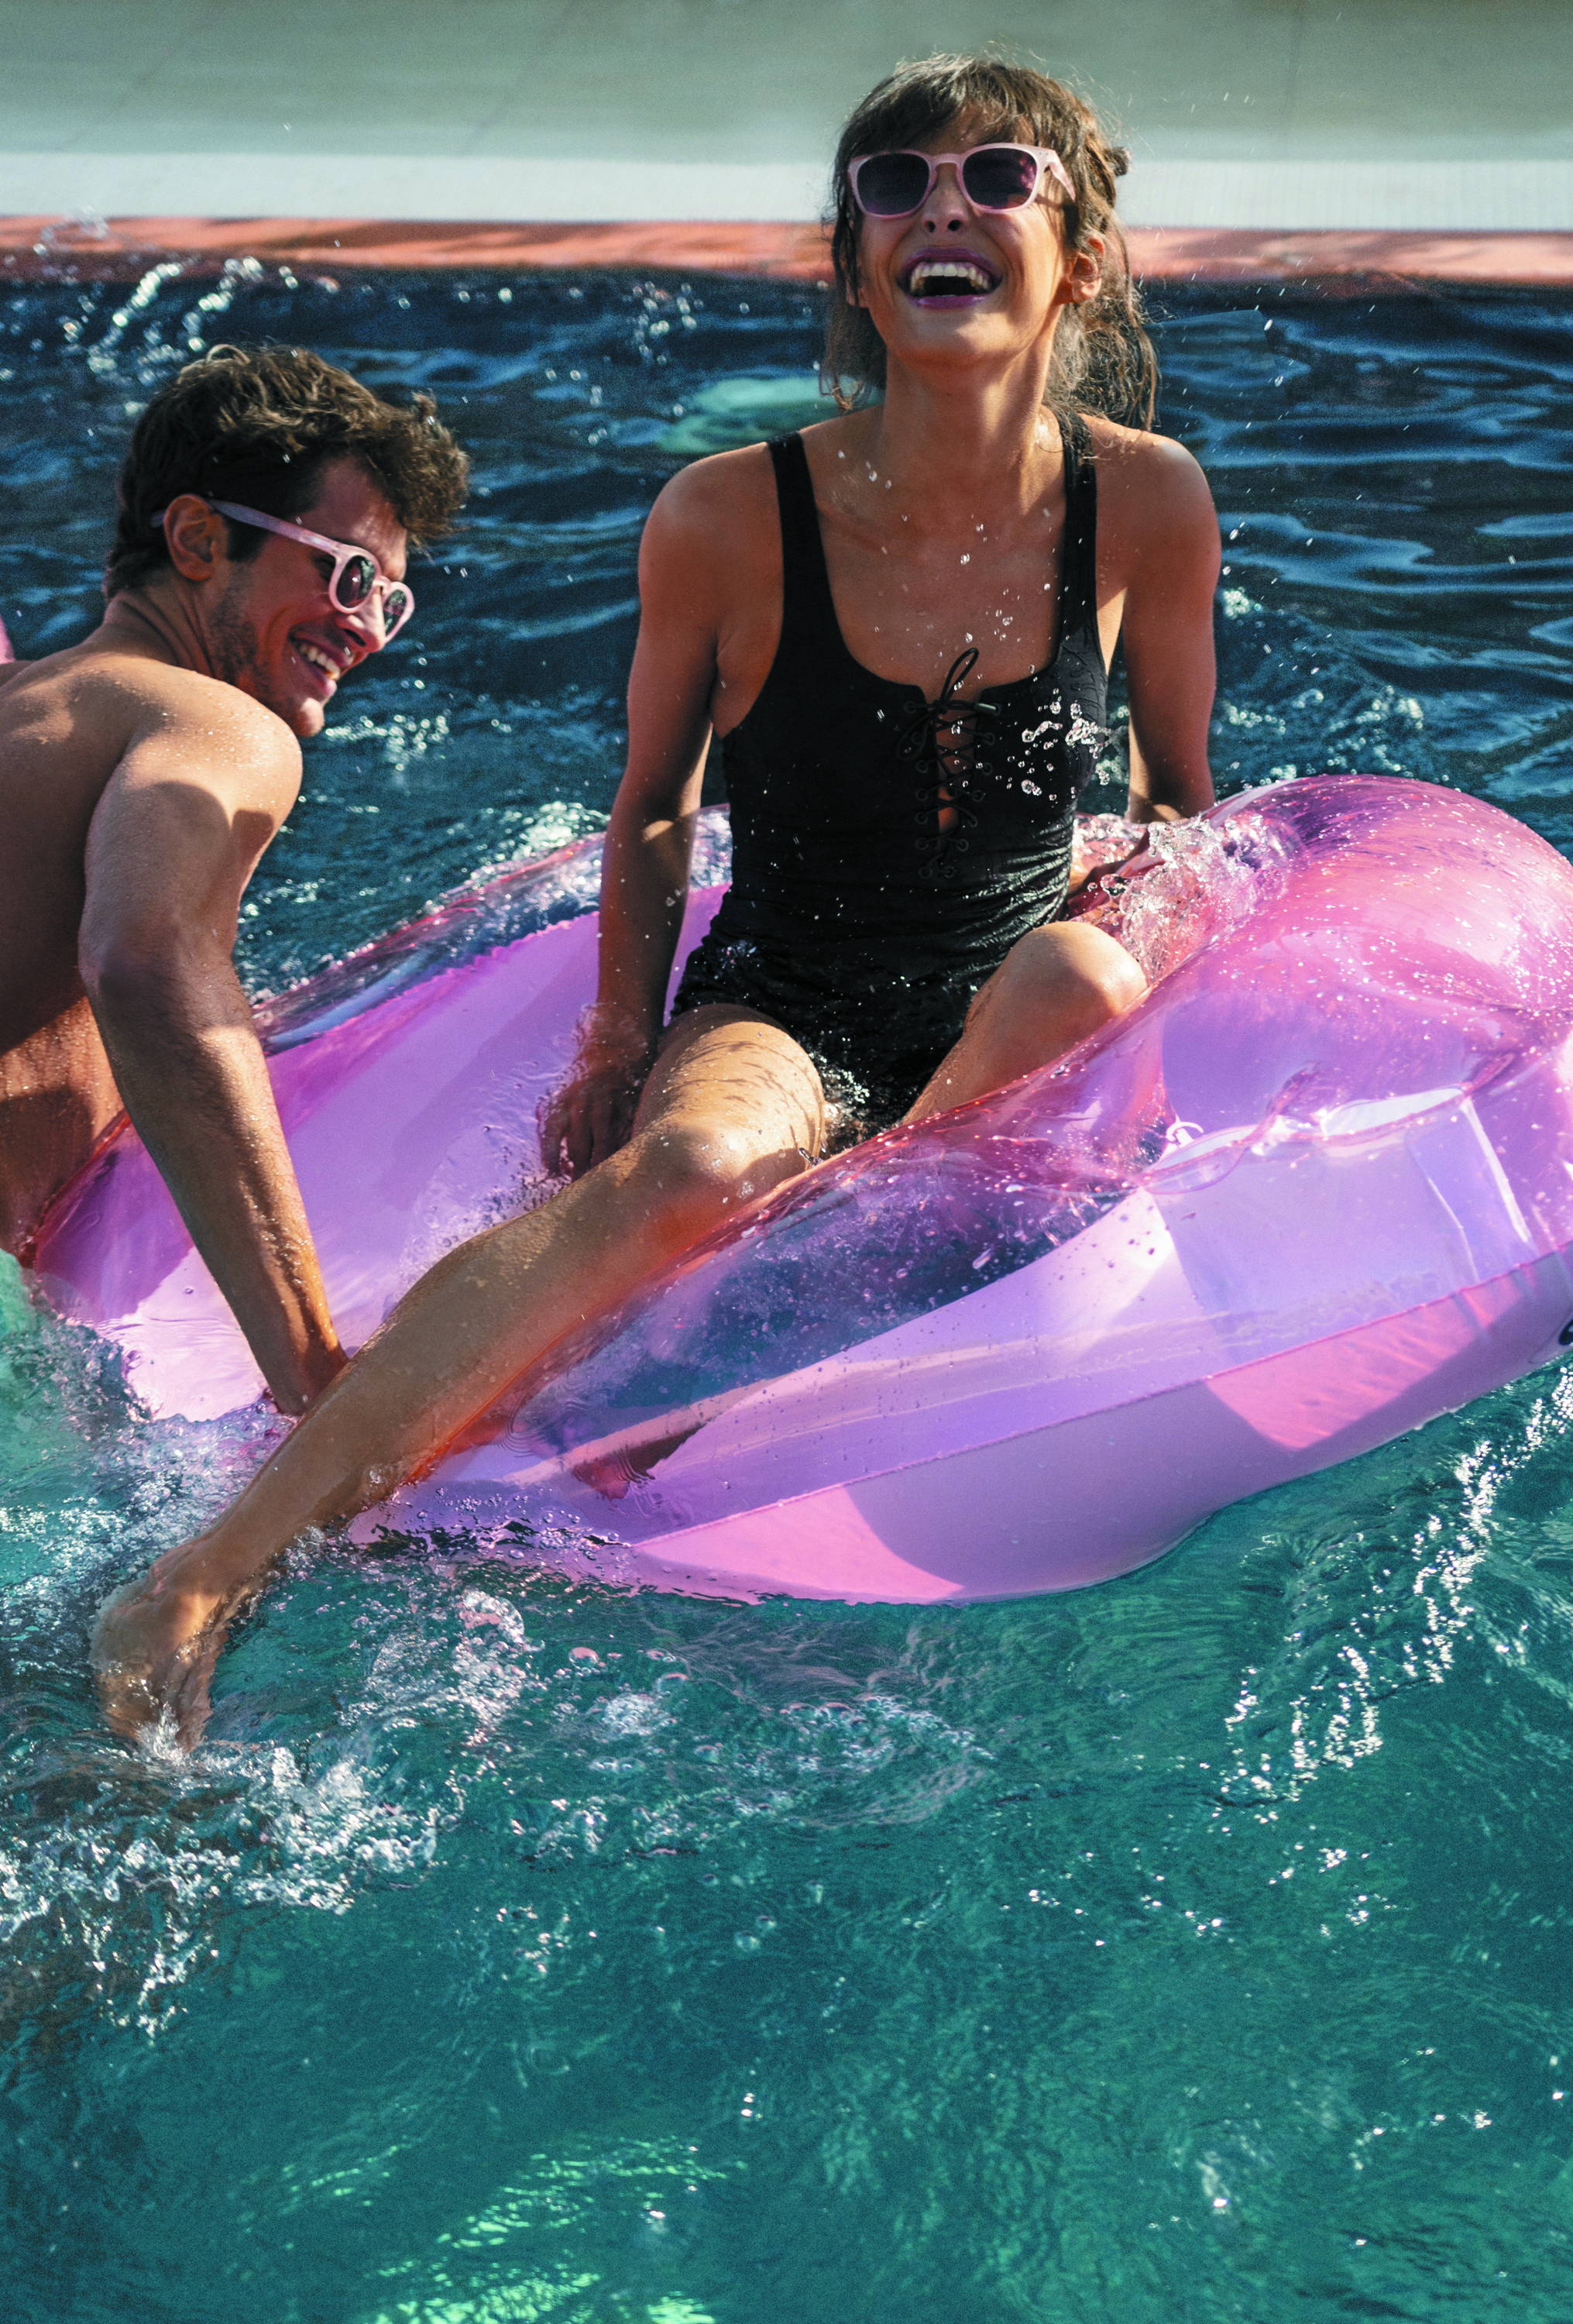 IZIPIZI x Sunnylife Collaboration Sunglasses Pool Floats